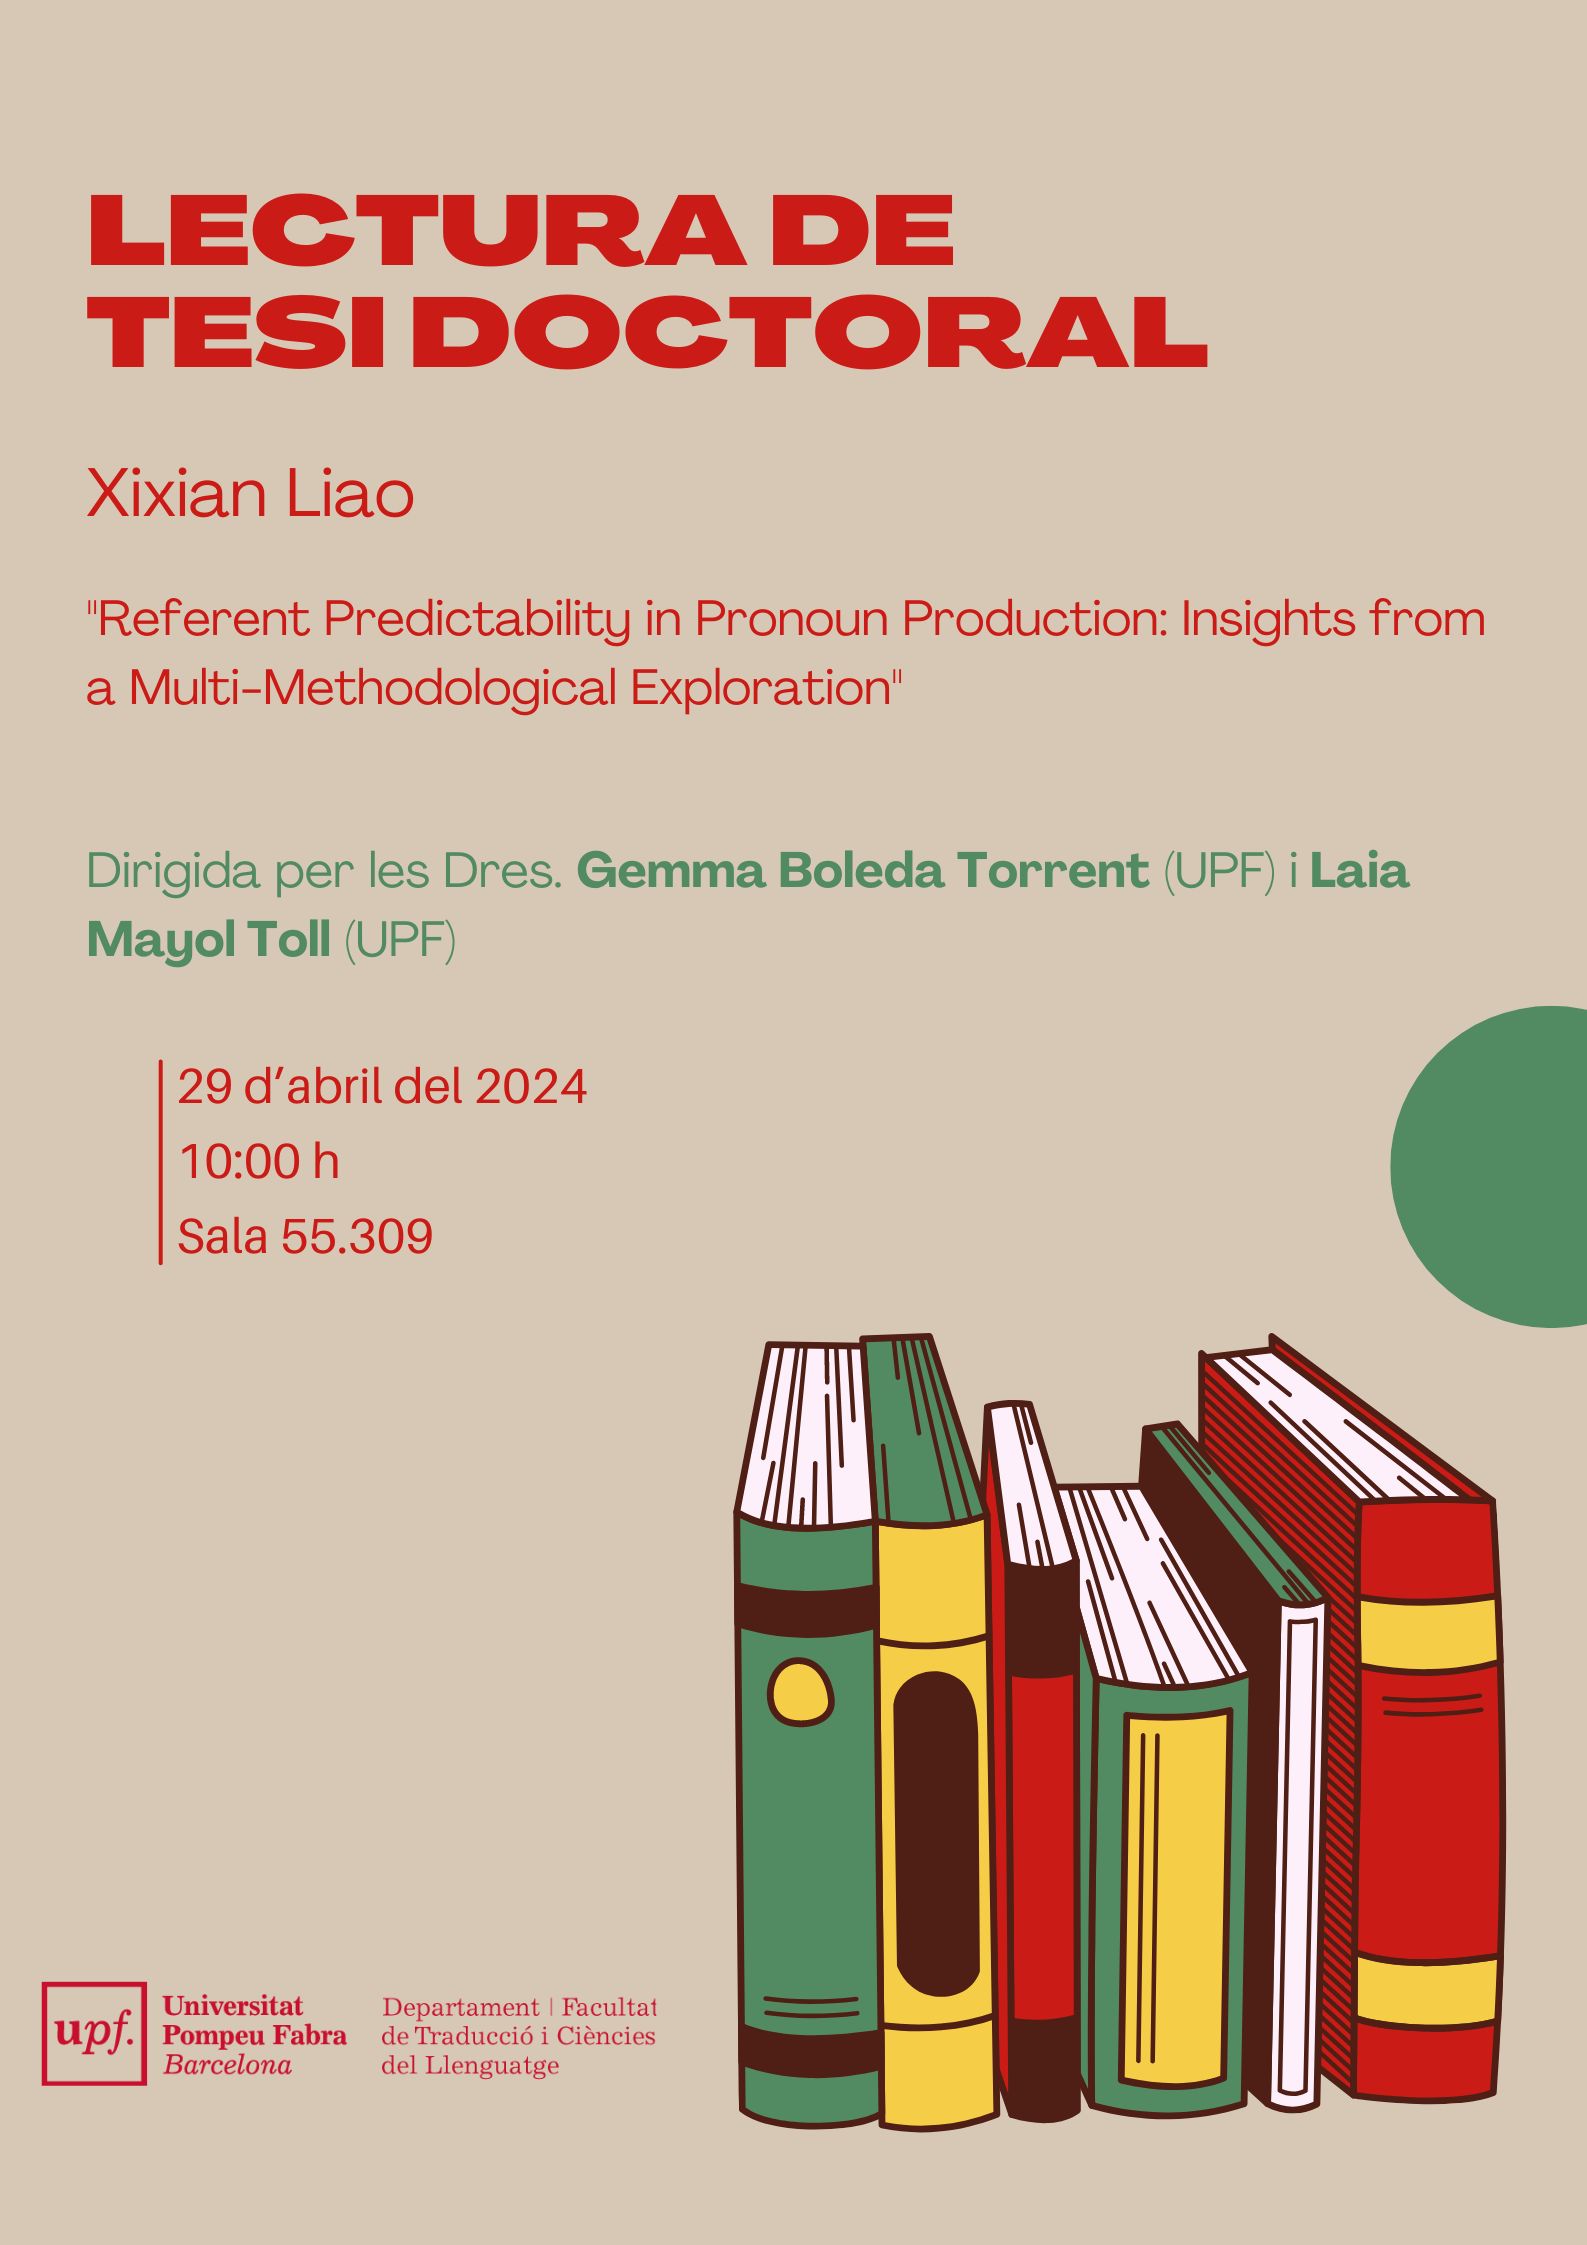 29/04/2024 Lectura de la tesi doctoral de Xixian Liao, a les 10.00 hores